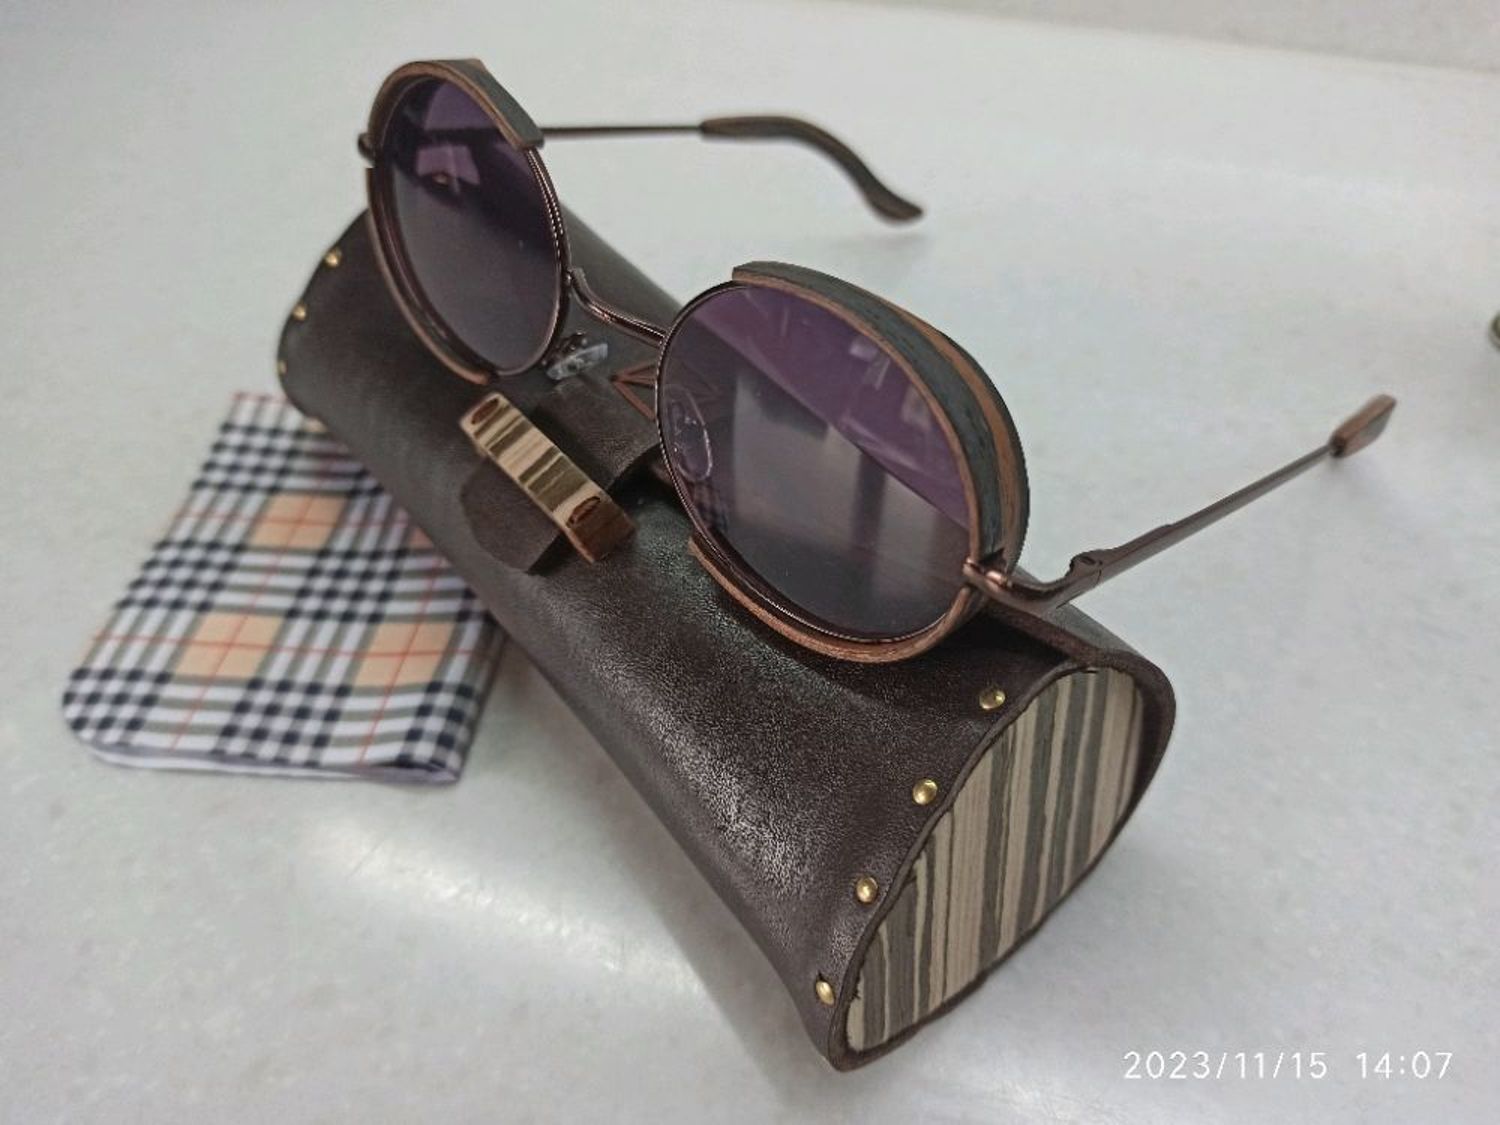 Photo №1 к отзыву покупателя Pikalova Marina о товаре Овальные солнцезащитные очки and 1 more item